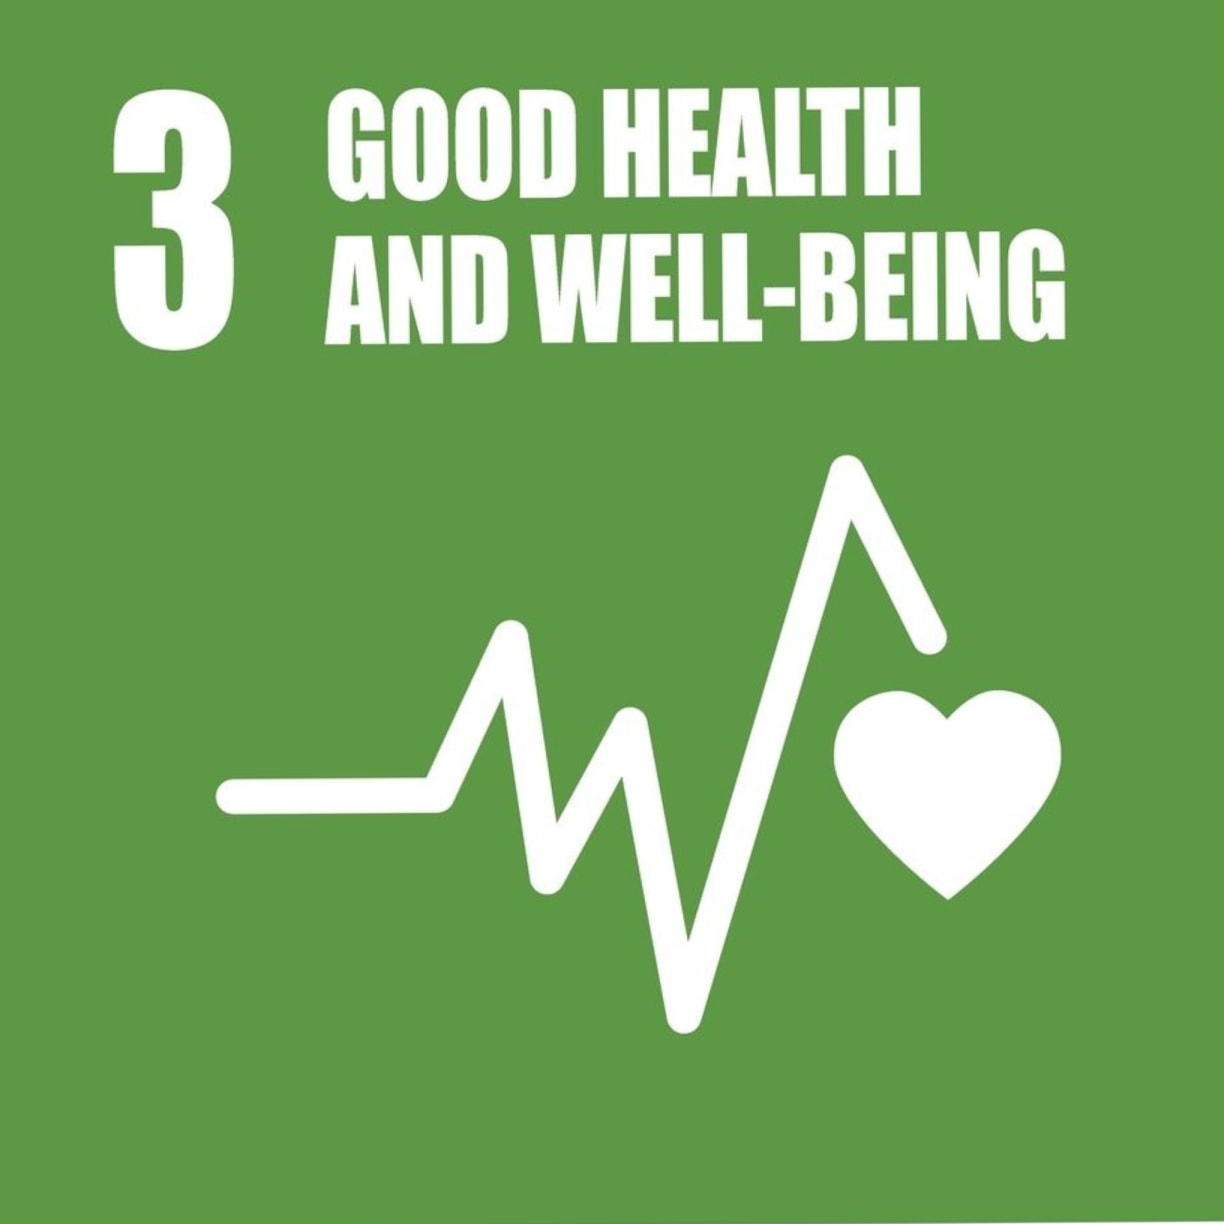 Vetcare sustainability UN Health